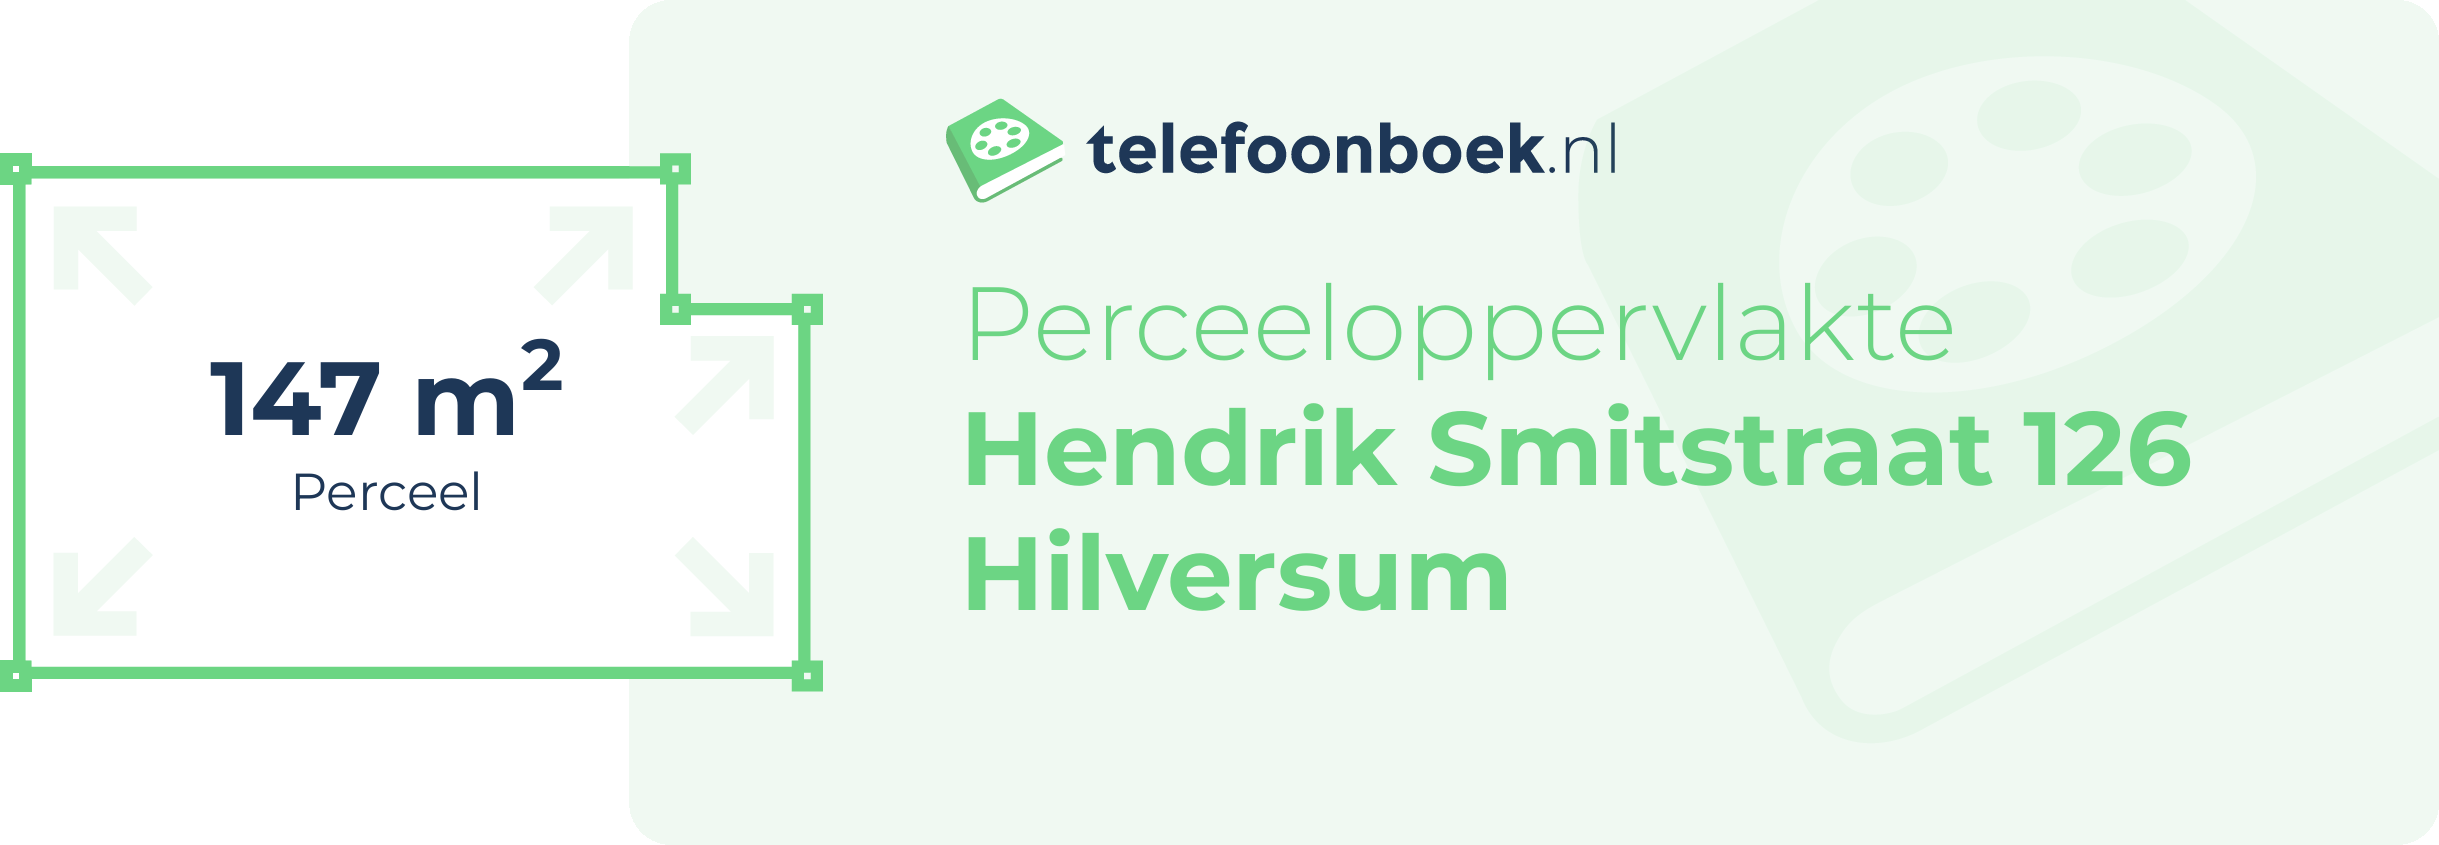 Perceeloppervlakte Hendrik Smitstraat 126 Hilversum